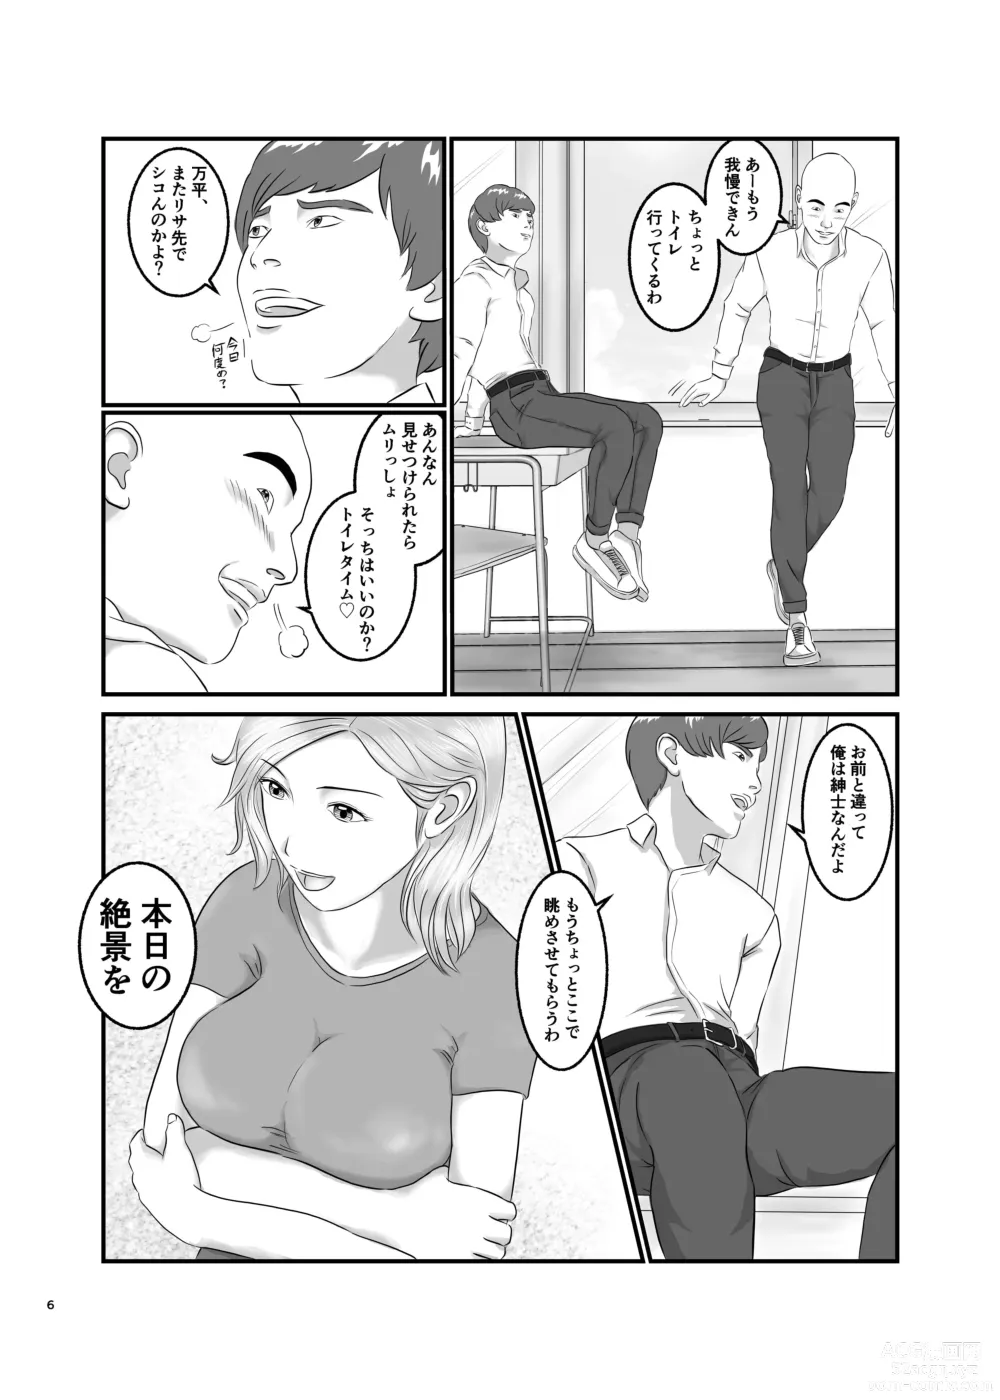 Page 6 of doujinshi Akogare no Hito wa Mou Owari!